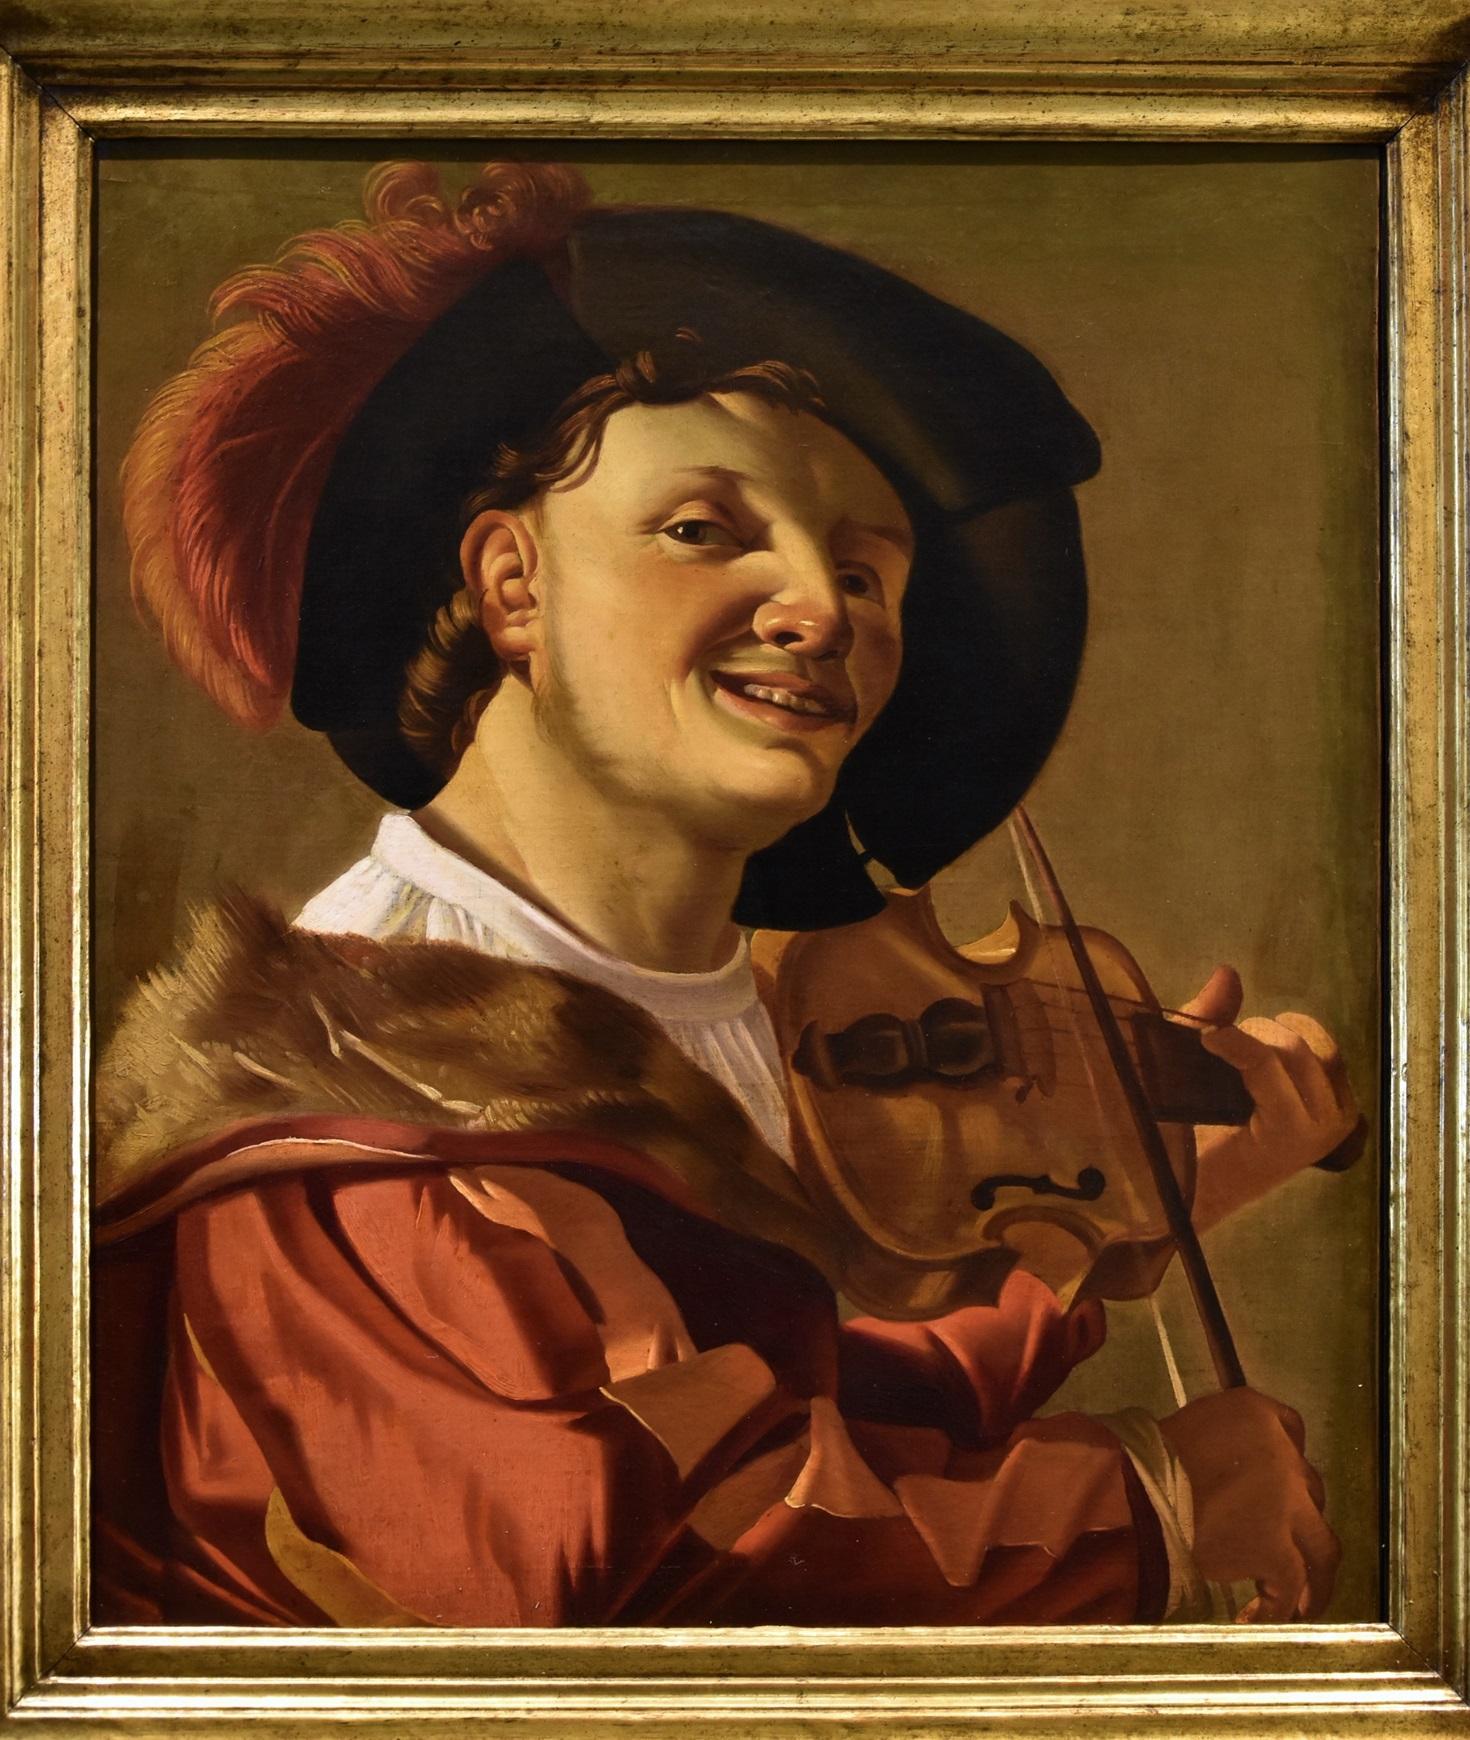 Portrait Painting Hendrick Ter Brugghen (the Hague 1588-1629 Utrecht)  - Joueur de violon Ter Brugghen Peinture Huile sur toile 17ème siècle Flemish Vieux maître